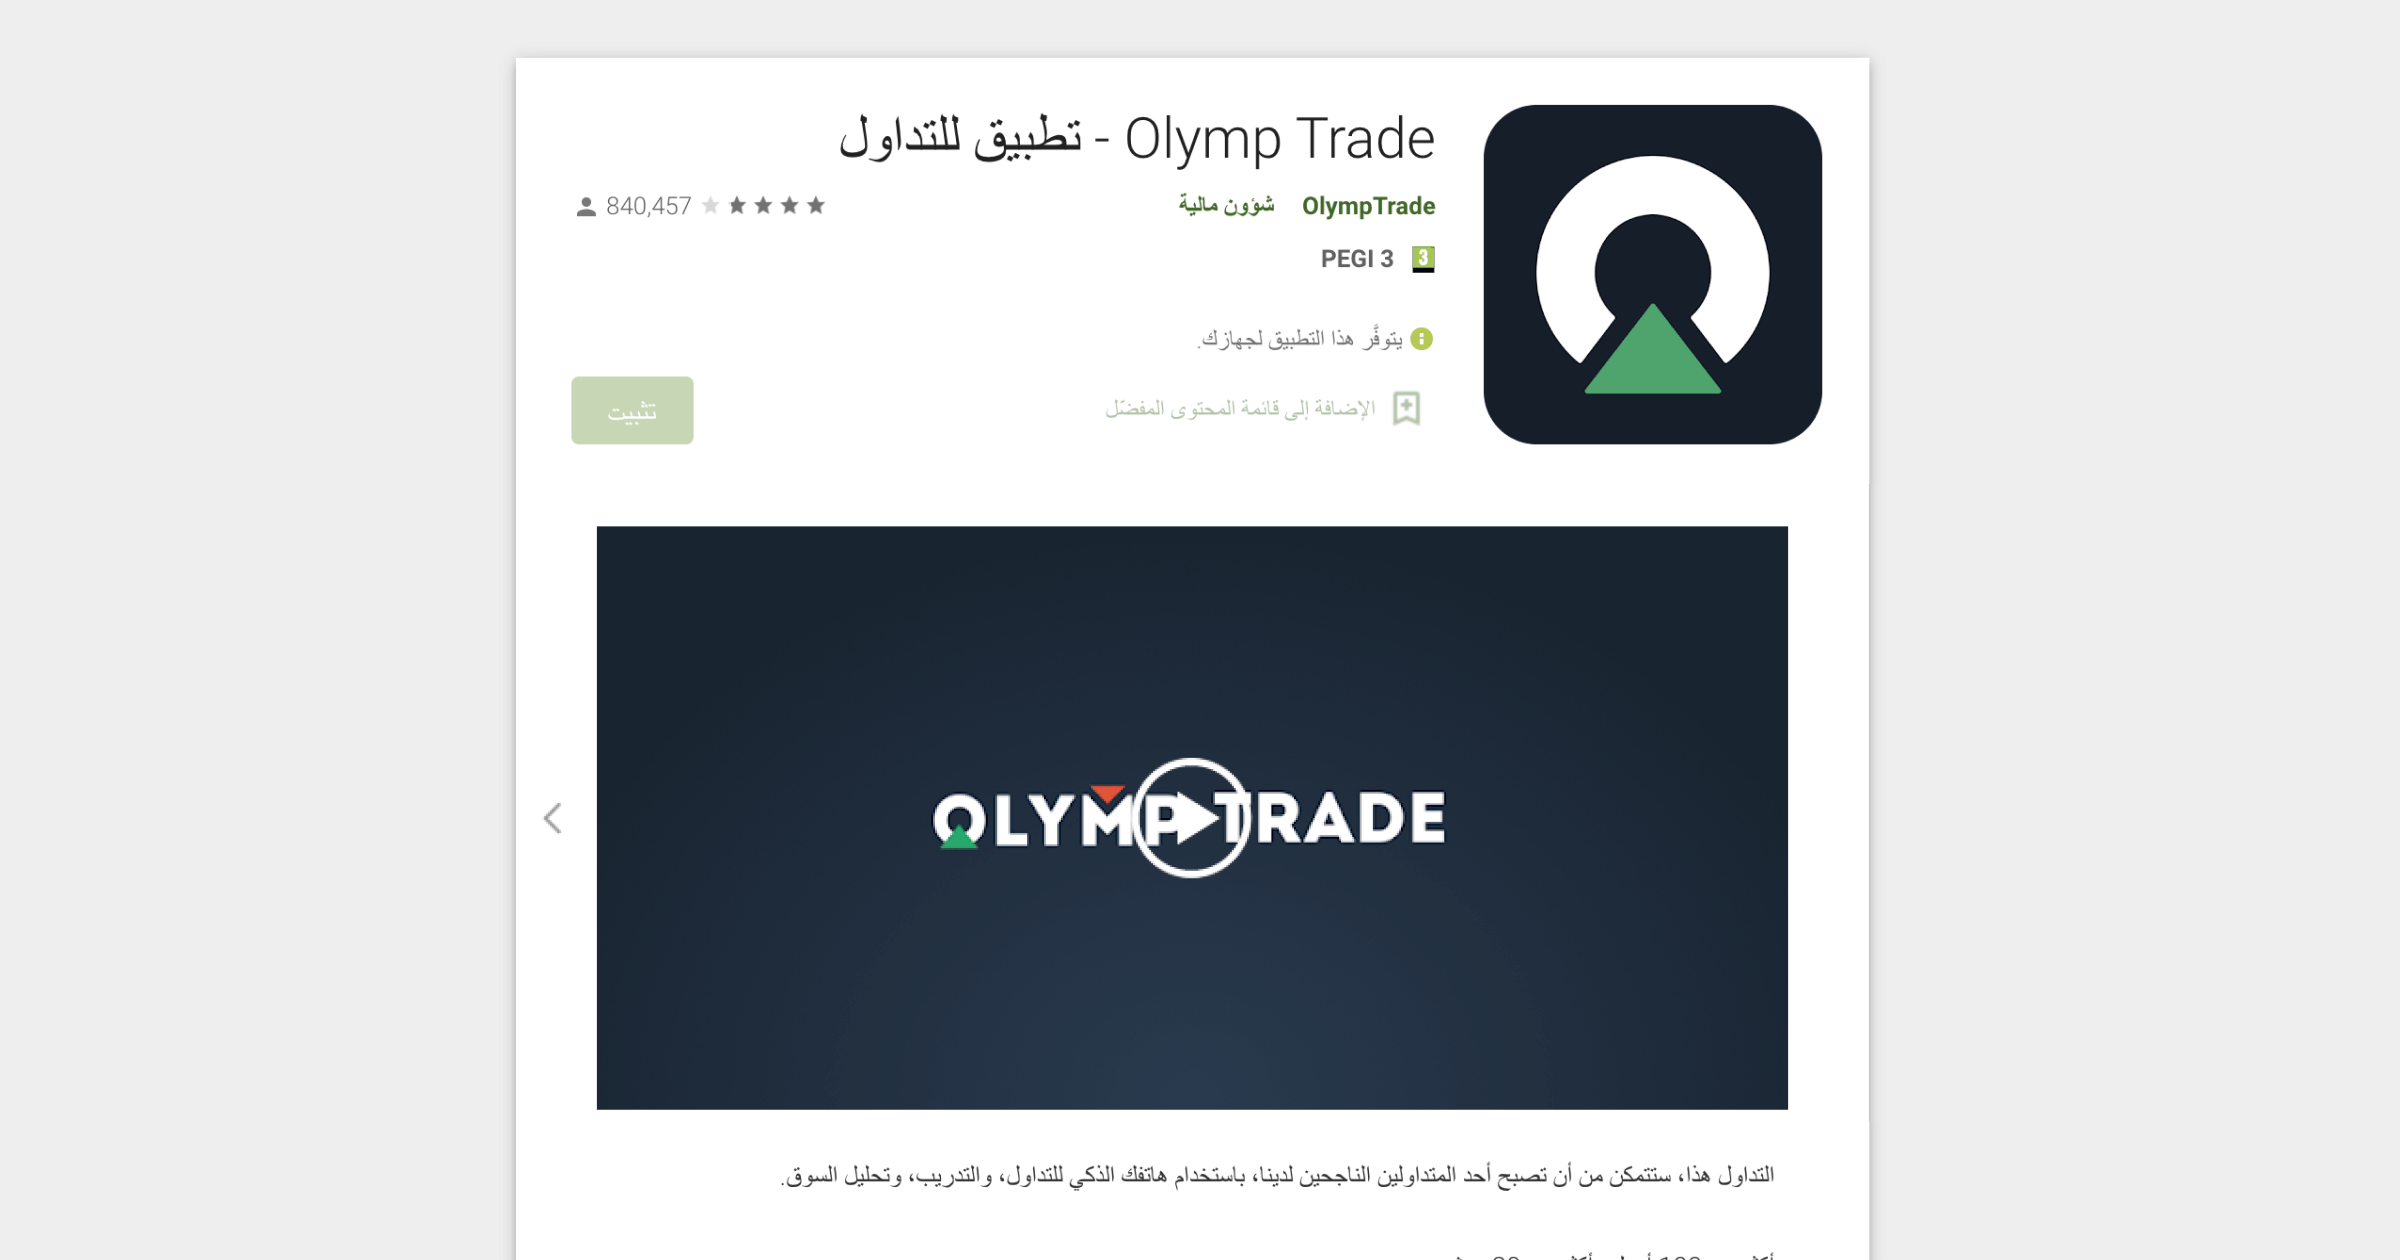 صفحة تطبيق Olymp Trade على البلاي ستور Olymp Trade - تطبيق للتداول شعار اولمب تريد شؤون مالية تثبيت PEGI 3